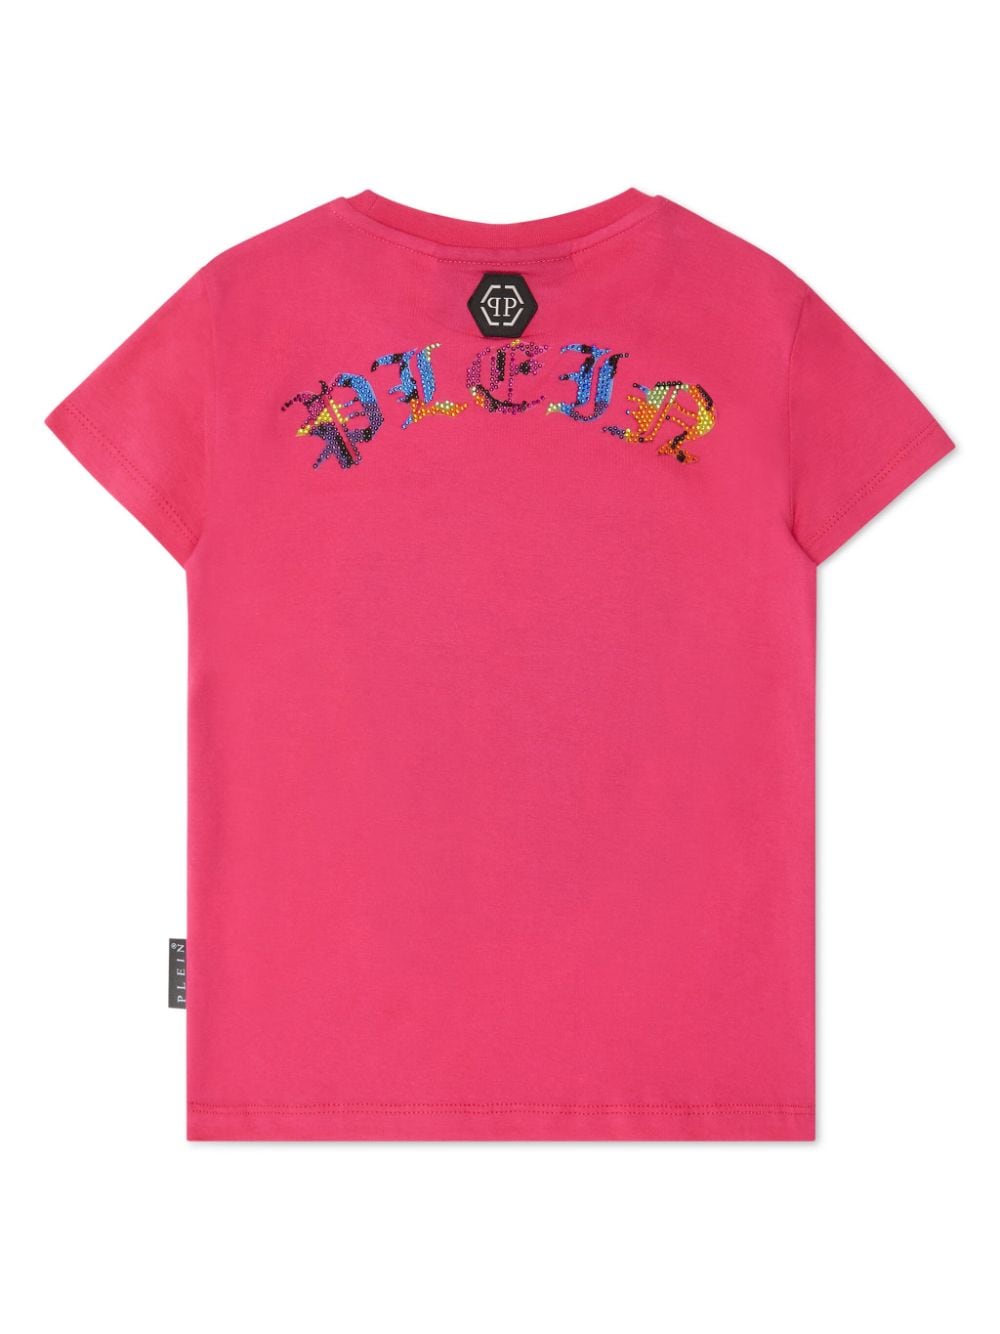 Philipp Plein Pure Smile T-shirt verfraaid met kristallen - Roze